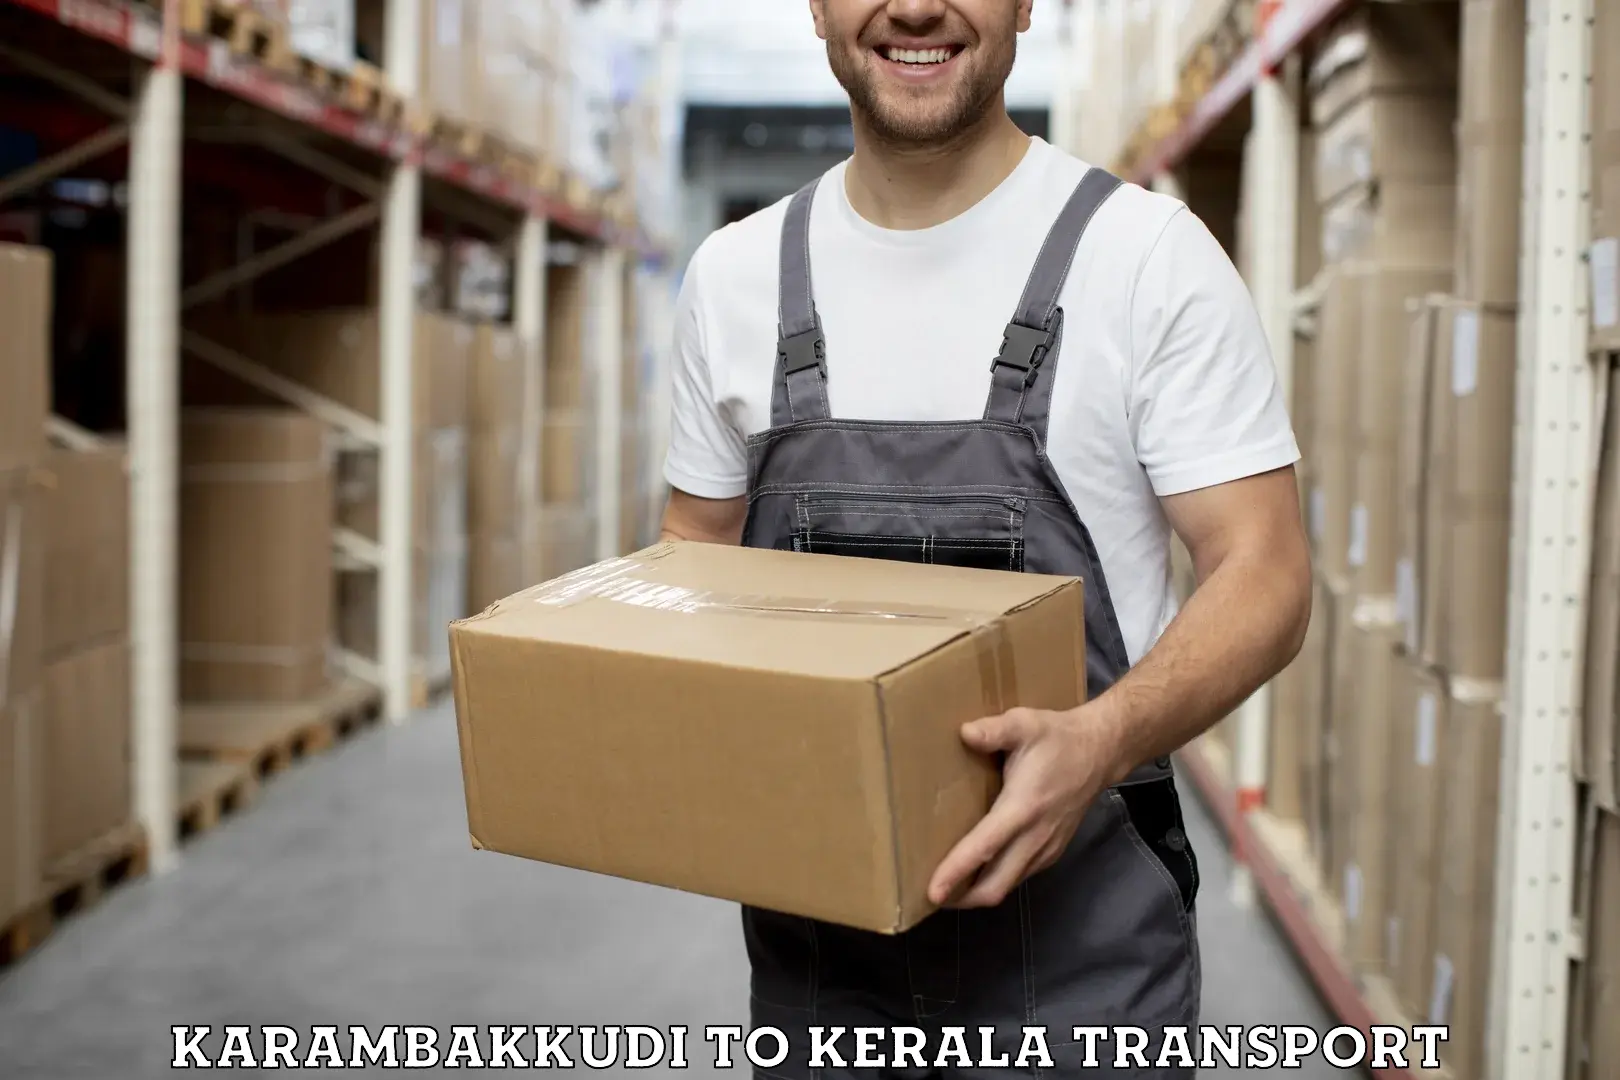 Online transport service Karambakkudi to Kerala